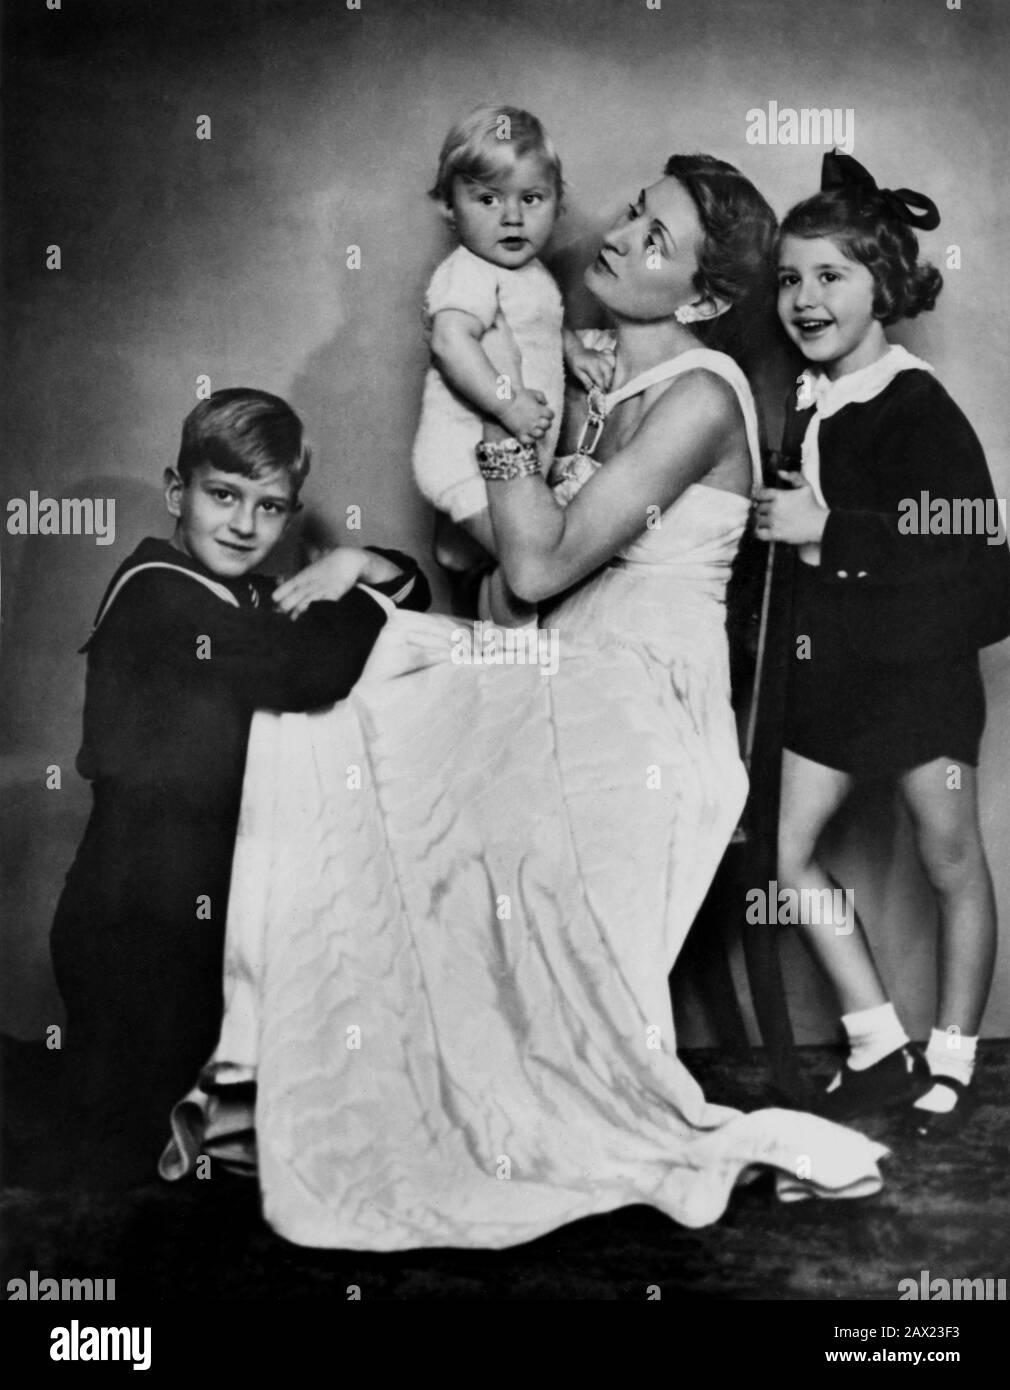 1939 , marzo , ROMA , ITALIA : Contessa EDDA CIANO ( 1910 - 1995 ) , figlia del dittatore italiano Duce Benito MUSSOLINI sposò Galeazzo CIANO, con i suoi figli FABRIZIO , RAIMONDA e MARZIO BRUNO . Foto di GHITTA CARRELL , Roma - CONTESSA - nobili - nobile - nobiltà italiana - nobiltà italiana - ritratto - ritatto - MODA - moda - moda - ANNI TRENTA - '30 - 30 - - pelliccia - pelliccia - sorriso - ritatto - abito bianco - abito vestito bianco - bianco - FASCISTA - FASCISMO - FASCISMO - FASCISMO - figli - figlio - figlia - mamma - CHILDRE - bambino - bambino - bambini - fratelli - fratelli - fratelli - Infanz Foto Stock